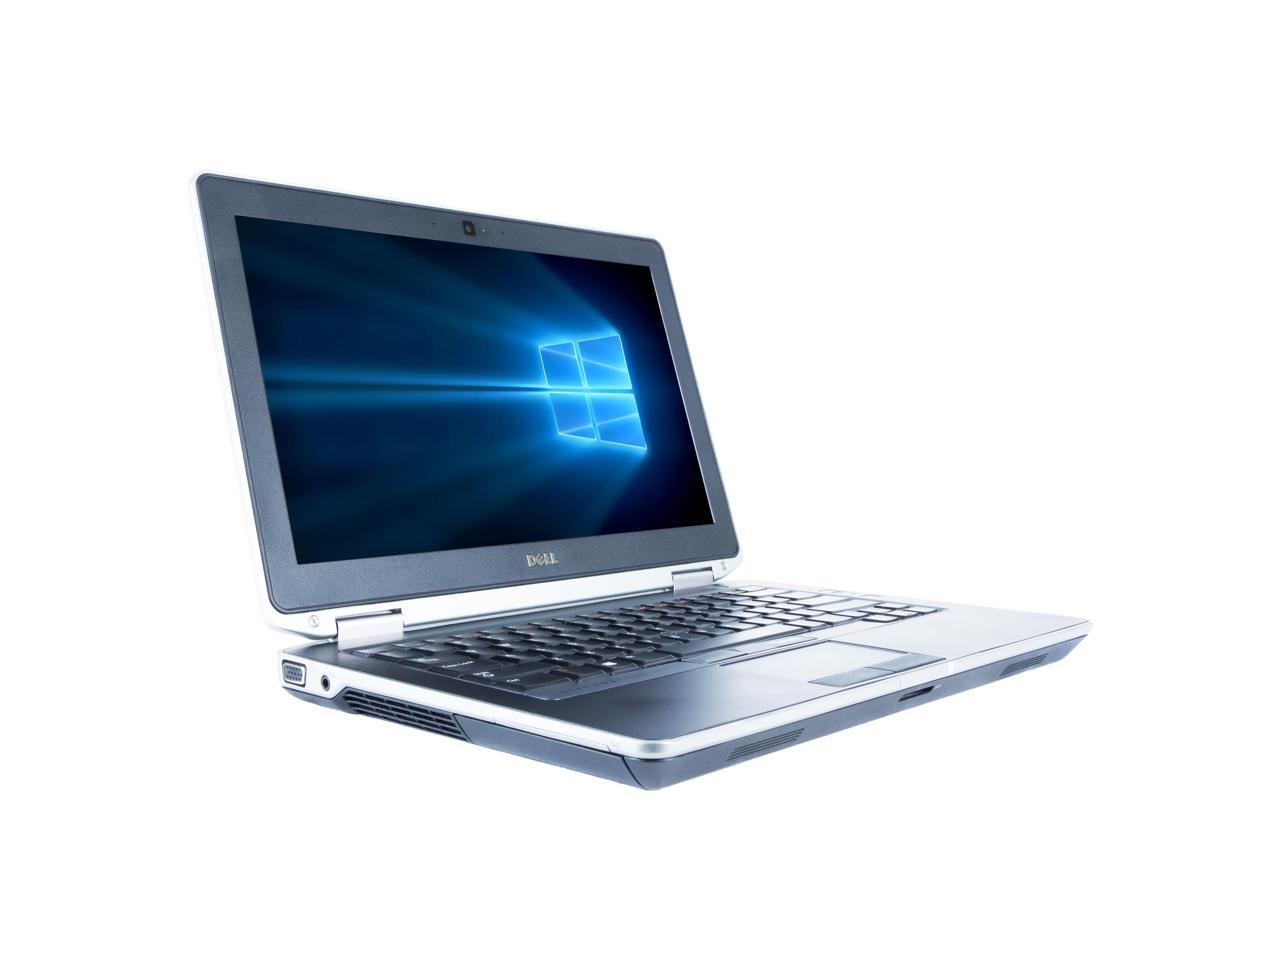 Dell Grade A Latitude E6330 13.3" Laptop, Intel Core I5-3320M up to 3.3G, 8G DDR3, 256G SSD, DVD, USB 3.0, VGA, miniHDMI, Windows 10 Pro 64 bits Multi-language(EN/ES)